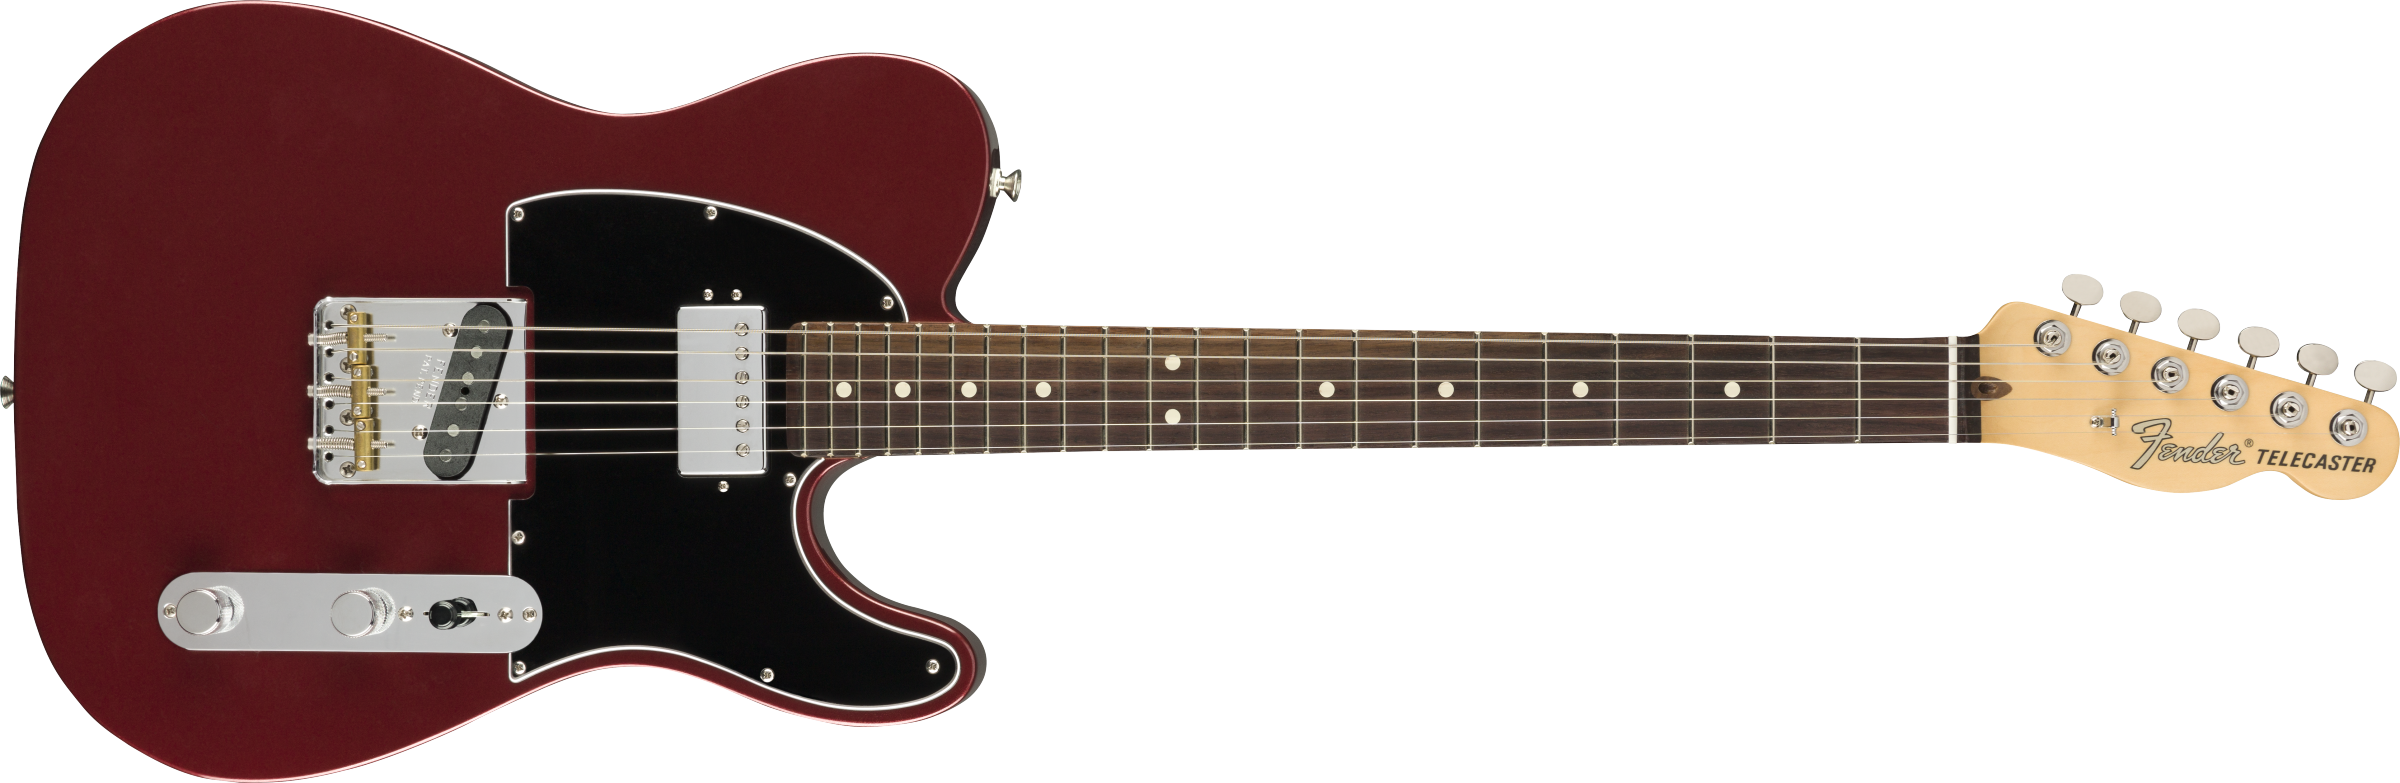 Billede af Fender American Performer Telecaster El-guitar (Aubergine)